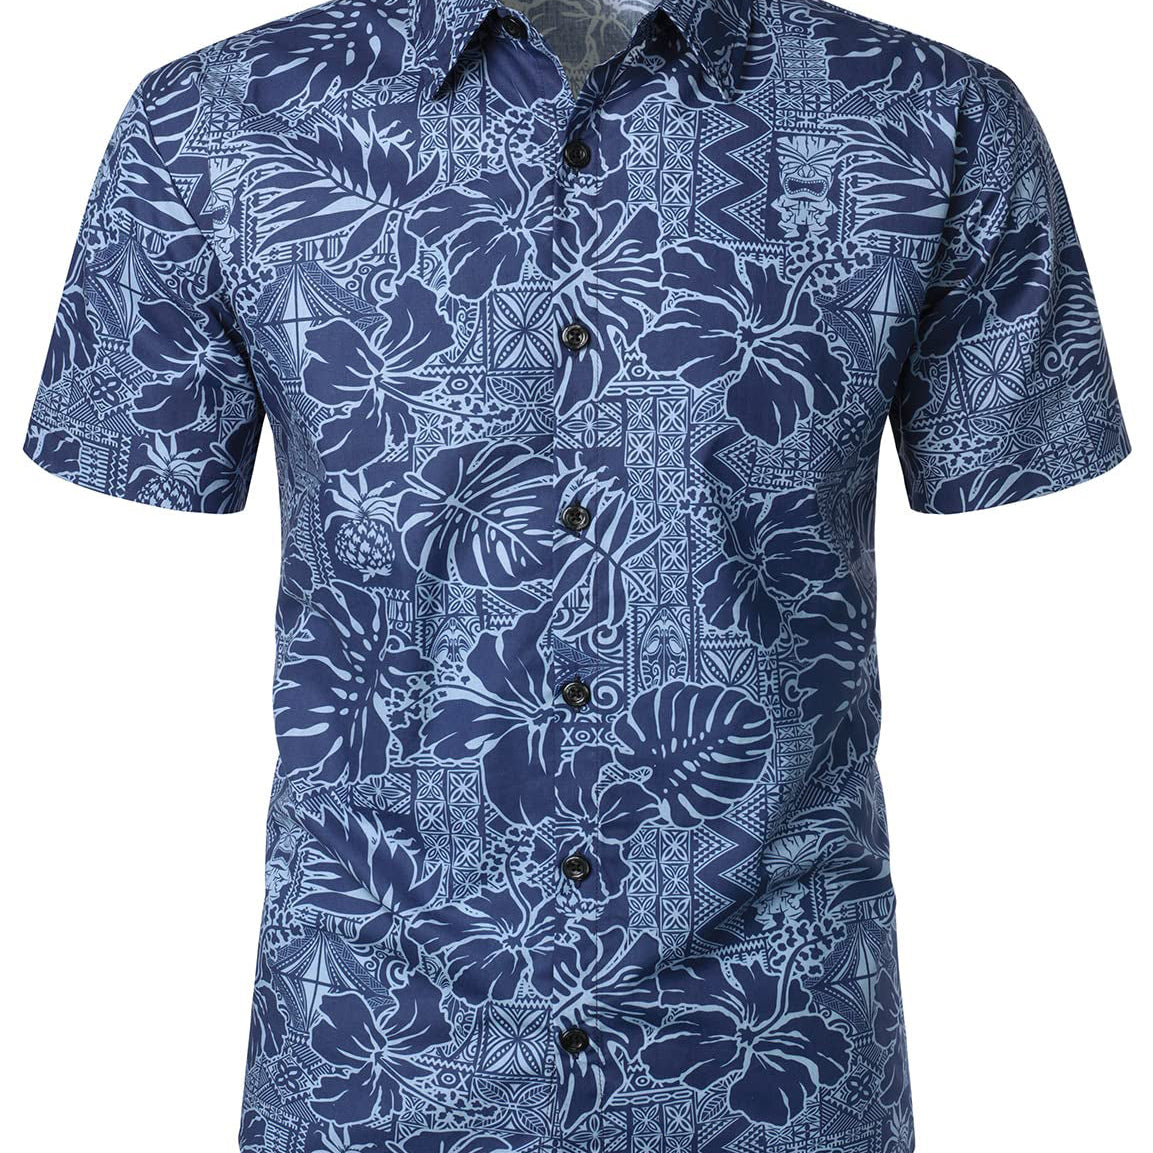 Camisa de verano de manga corta con botones de verano con estampado floral hawaiano azul marino para hombre